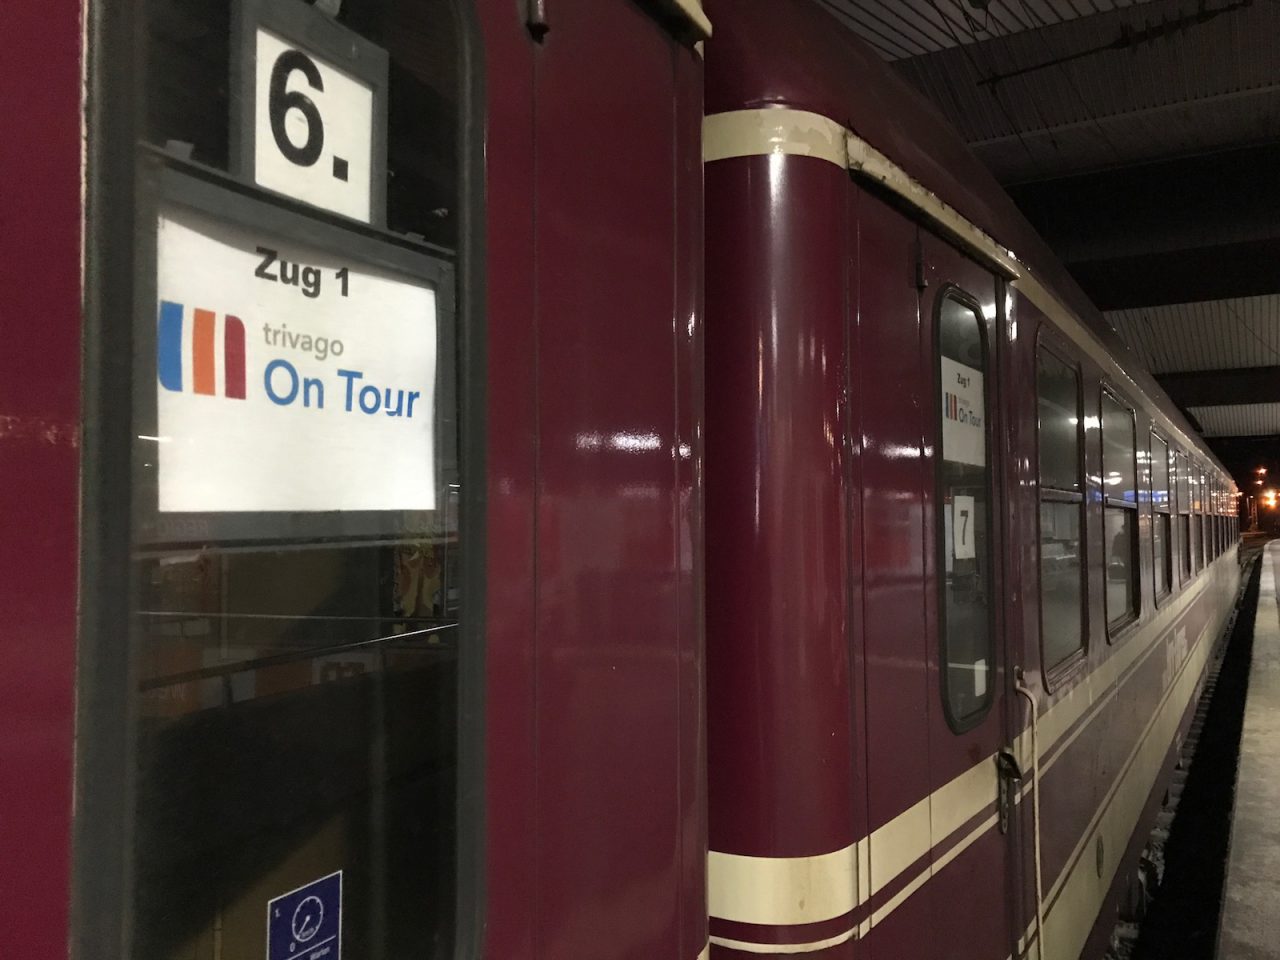 The *trivago on Tour* 2017 train